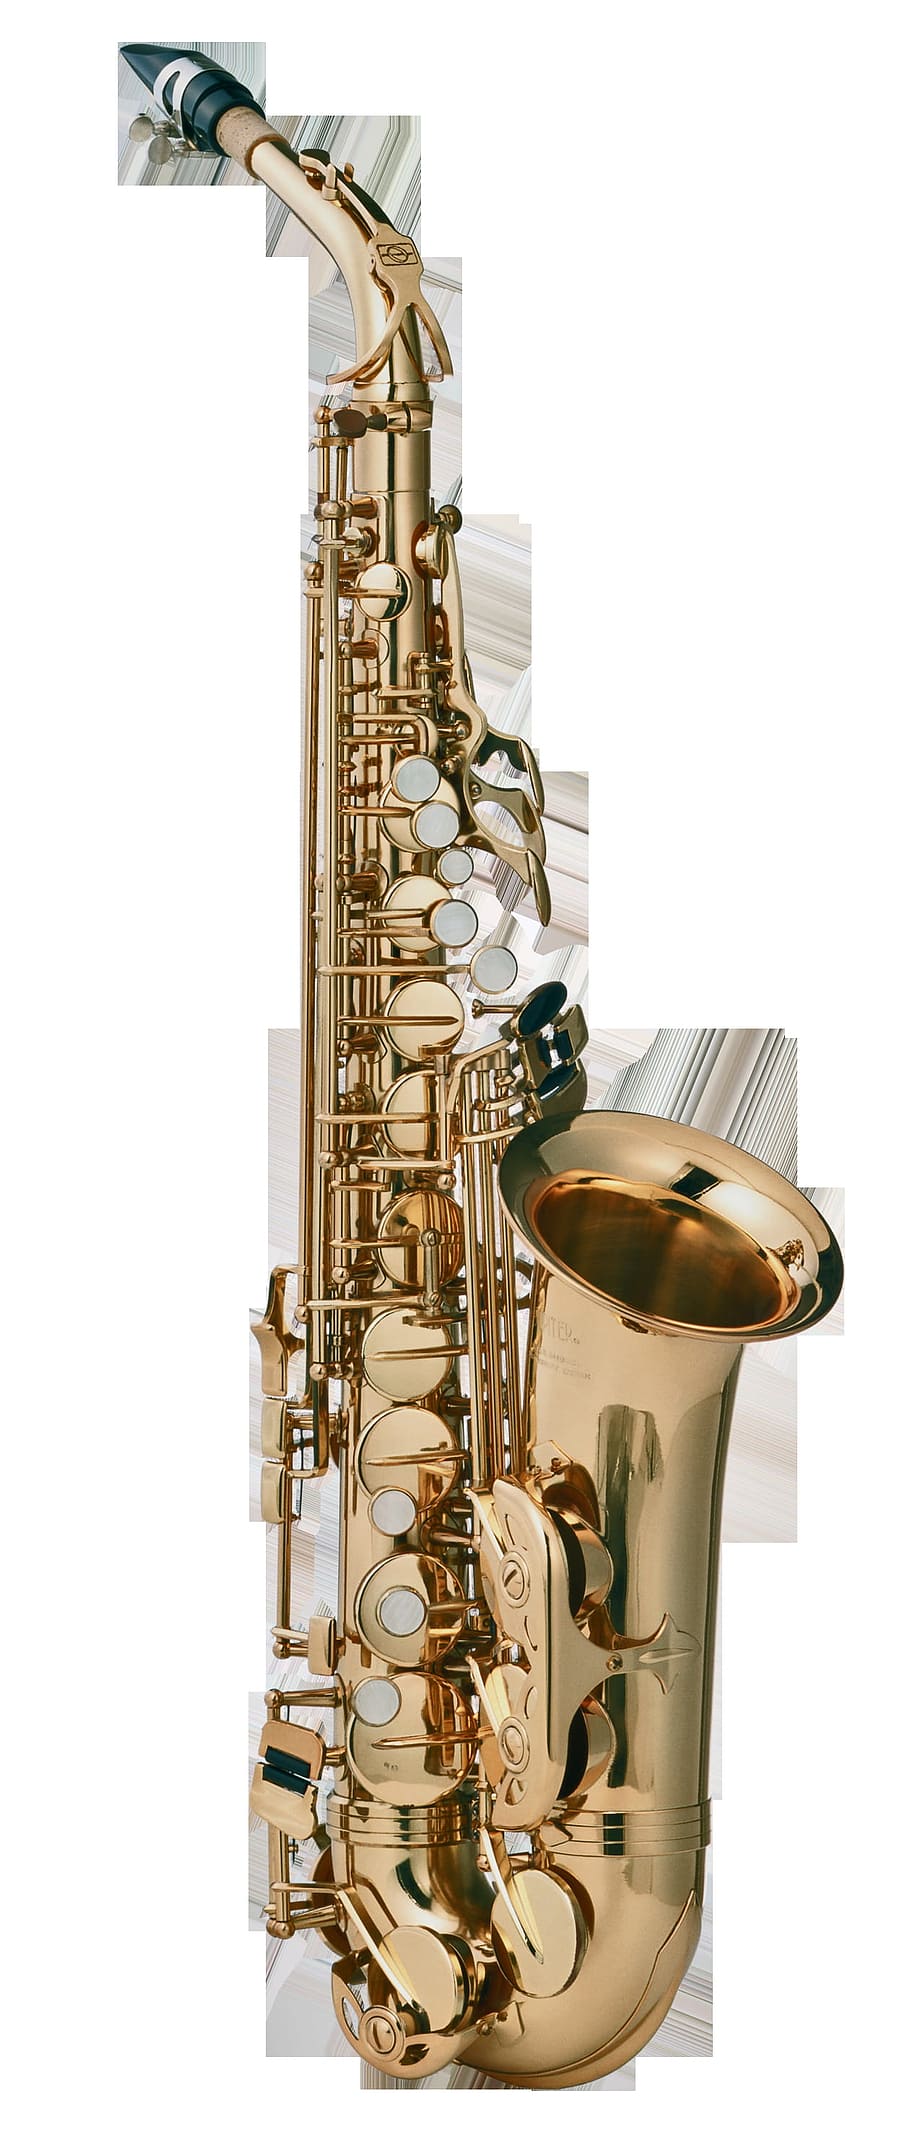 saxofone, música, musical, instrumento, objeto, dourado, tiro do estúdio, fundo branco, ambiente interno, instrumento musical